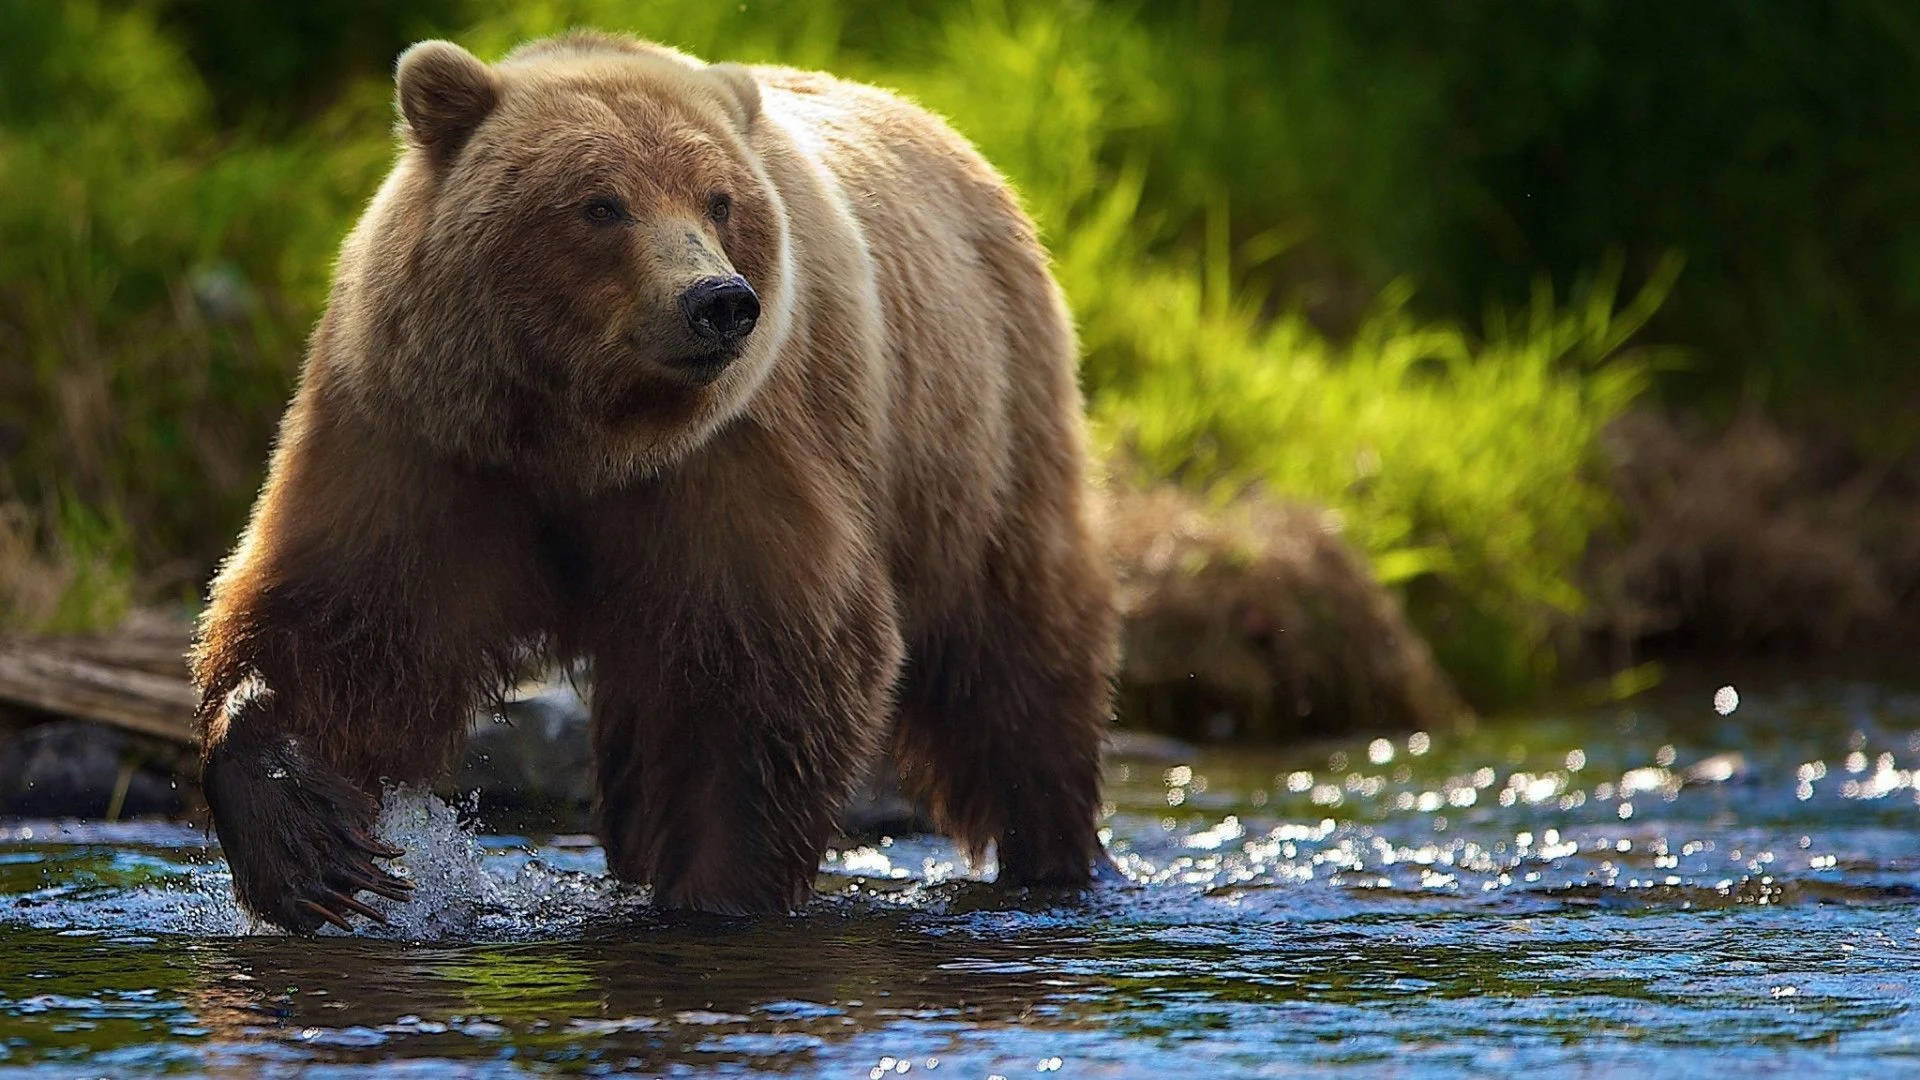 Kodiak Bear In A River